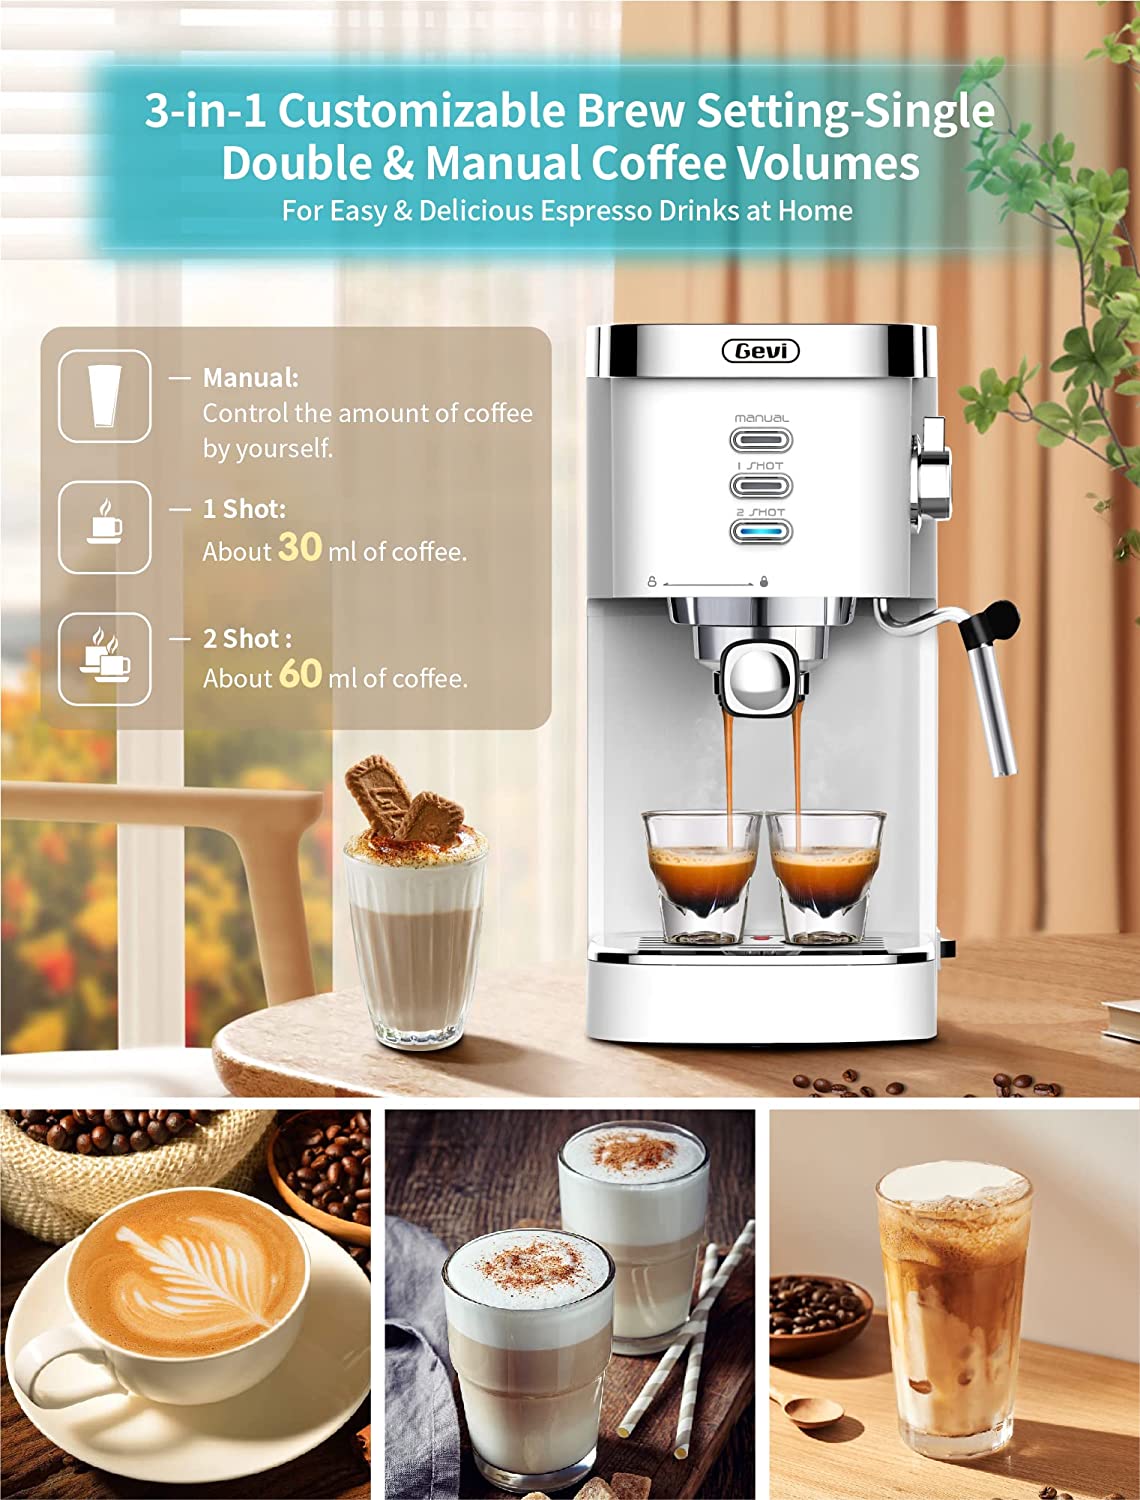 Farberware Espresso Maker-espresso shots, lattes, cappuccino Frothing New  in Box